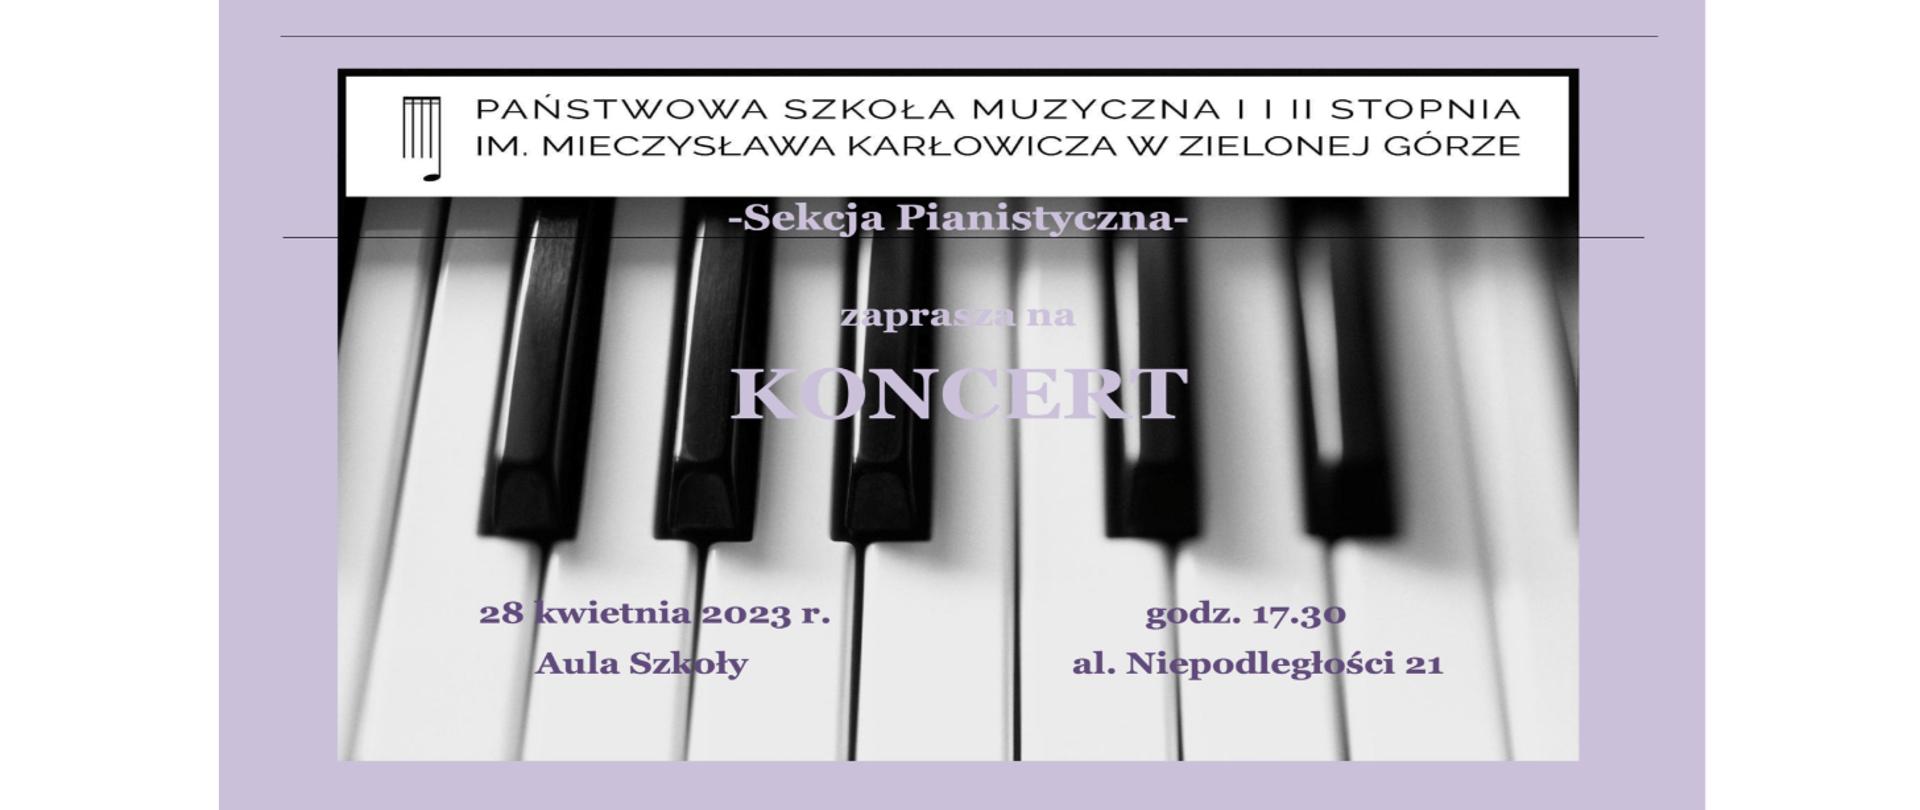 Plakat koncertu Sekcji Pianistycznej, u góry znajduje się nazwa i logo szkoły muzycznej, pod spodem fioletowy napis sekcja pianistyczna zaprasza na koncert w dniu 28 kwietnia 2023 roku, całość na tle klawiatury fortepianu.